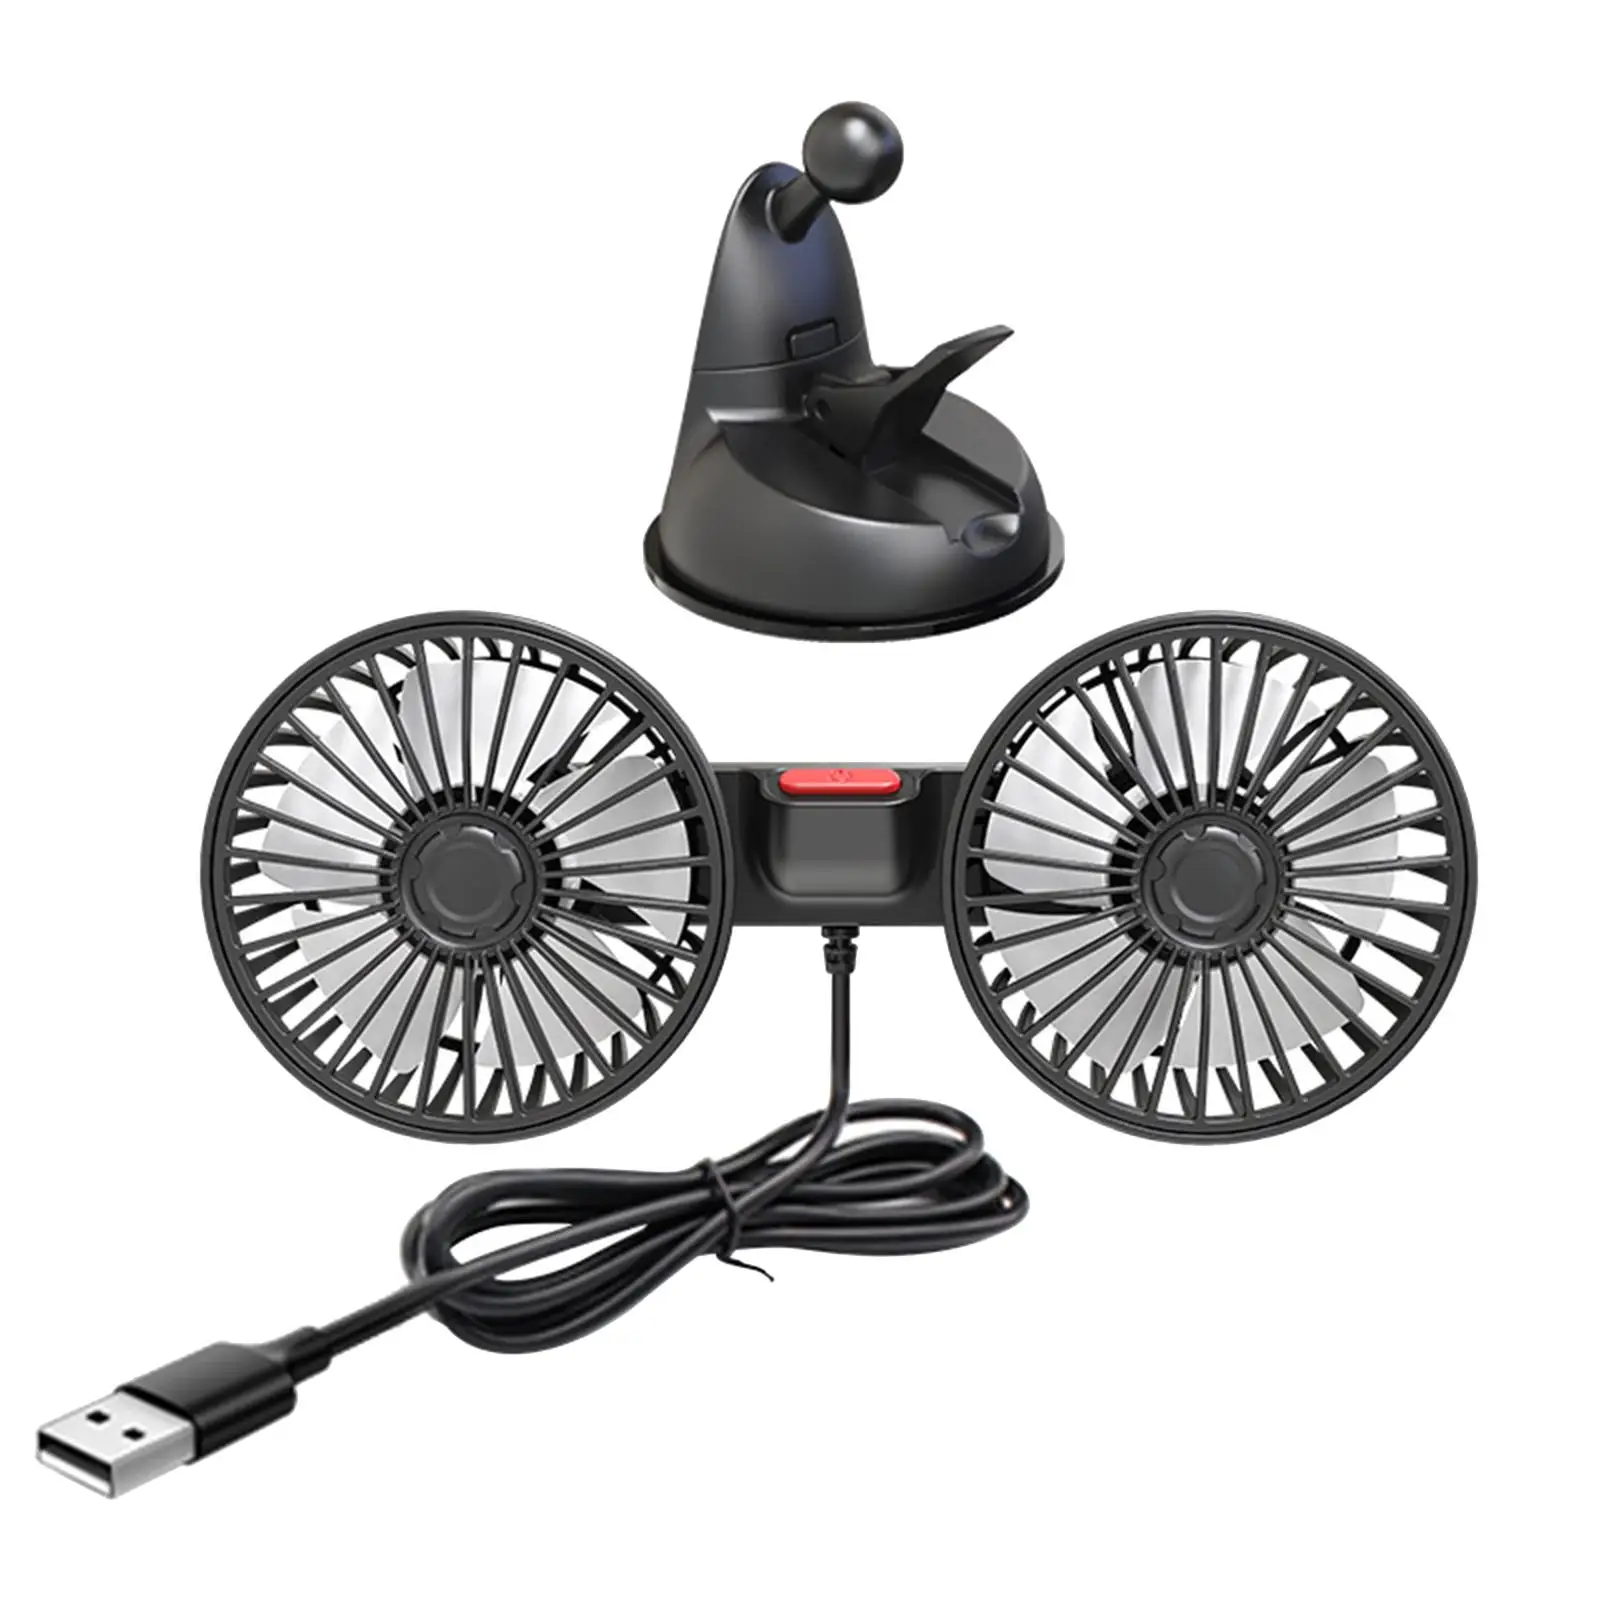 Car Electric Fan Desk Fan Mounted Car Accessories for Home Office Truck